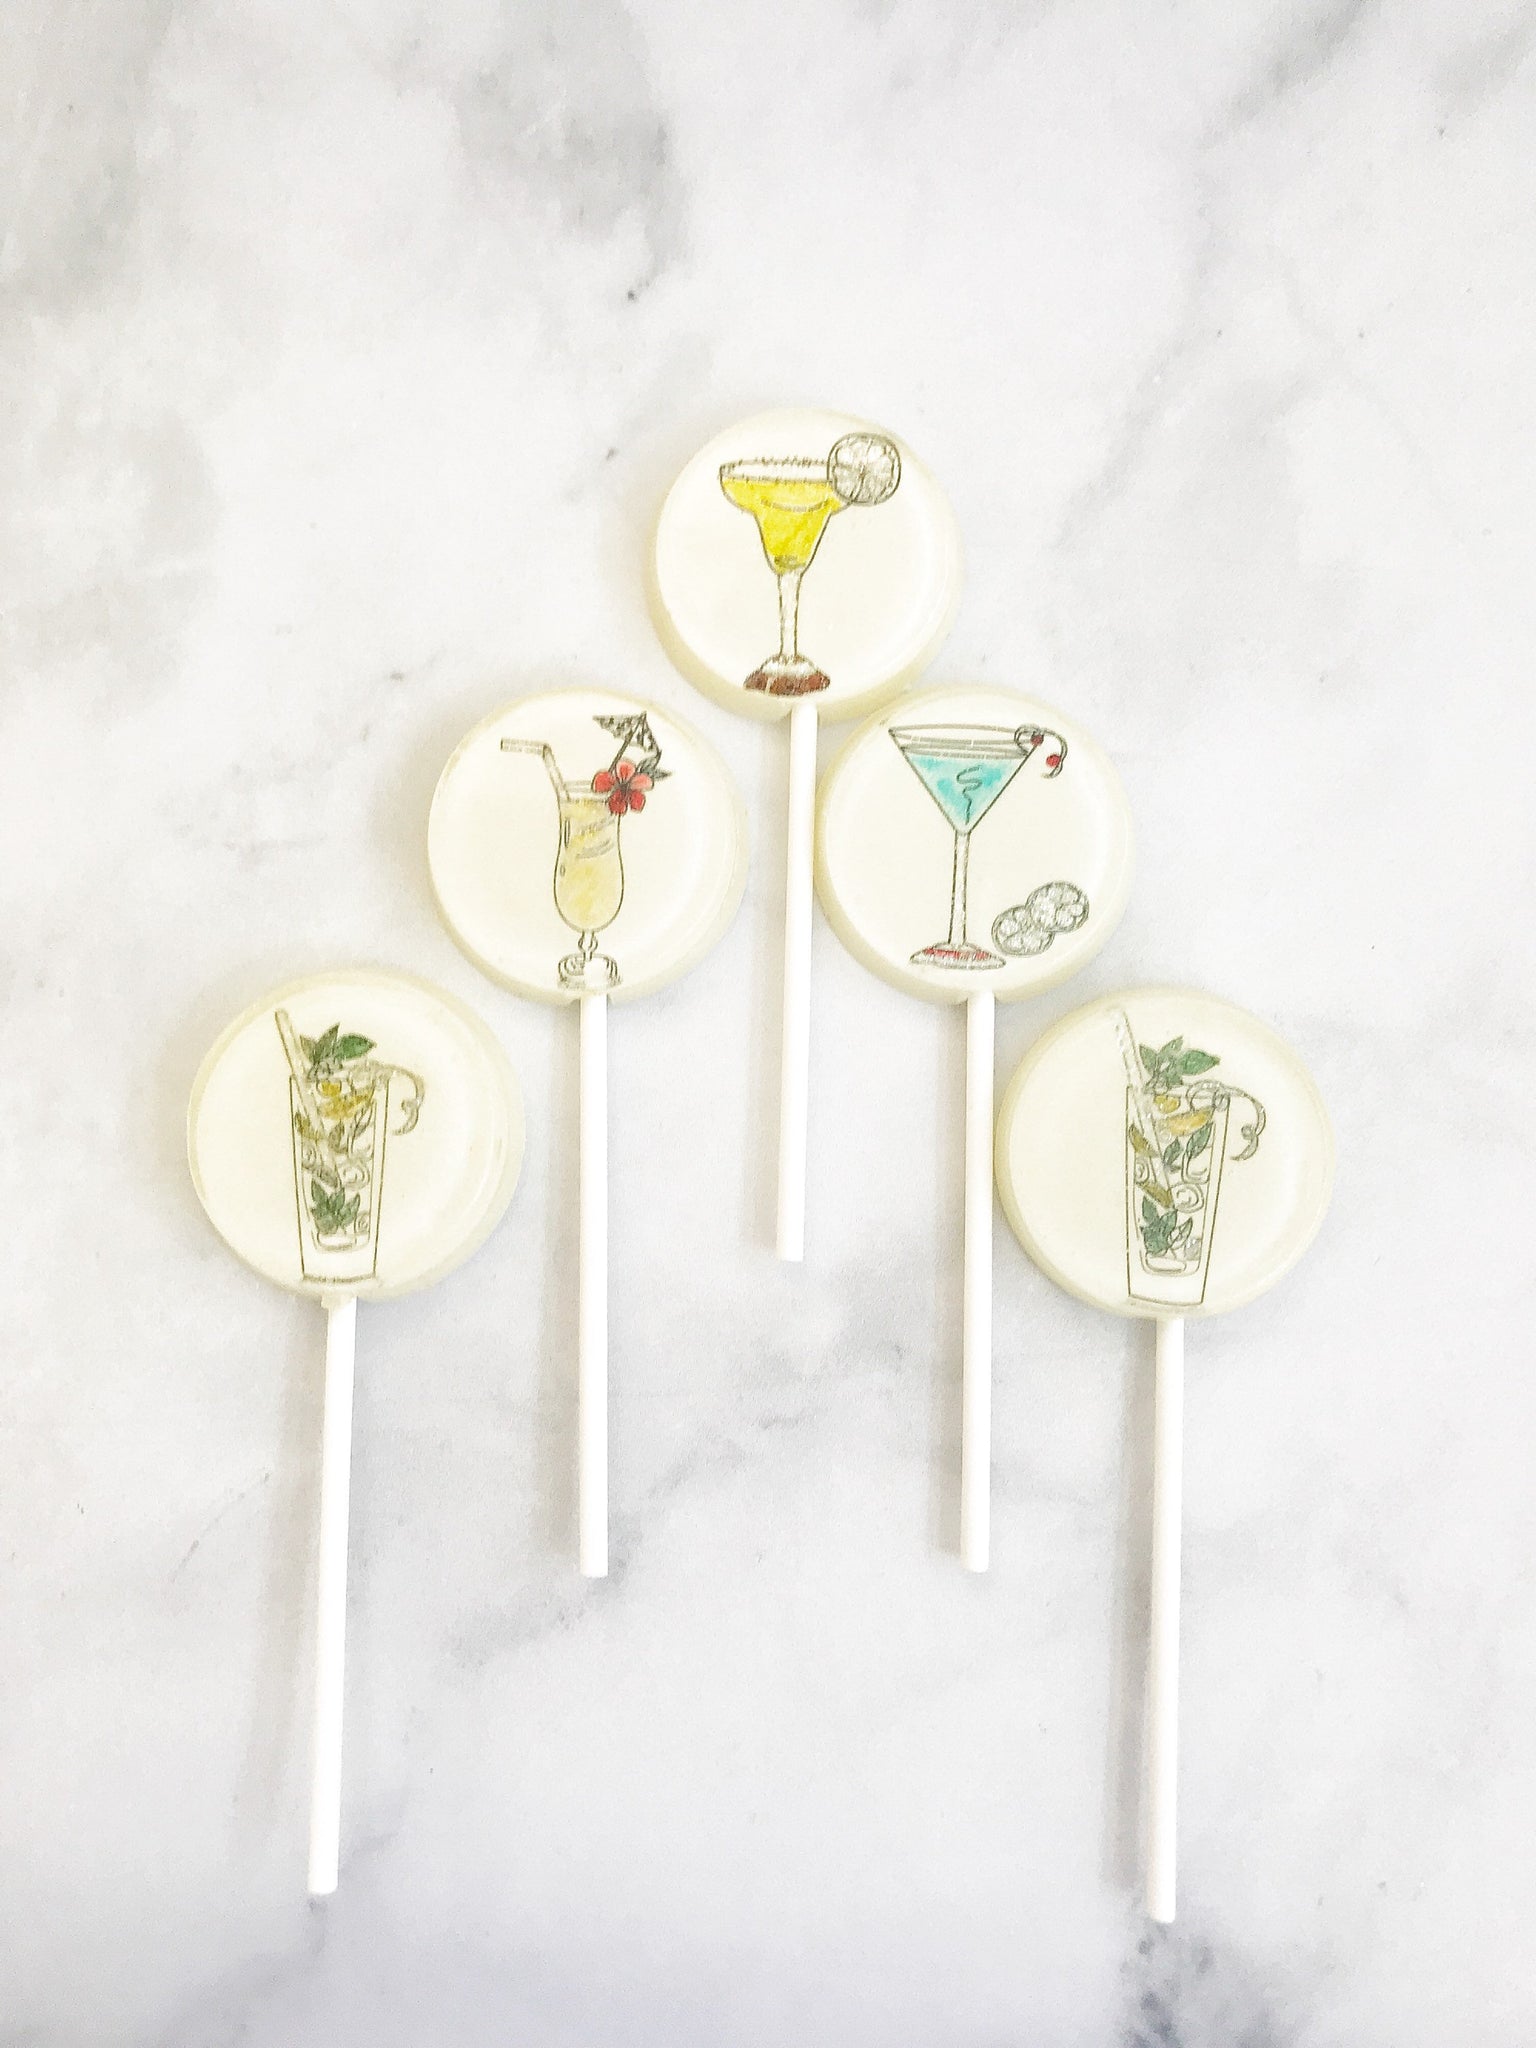 Party Favor Lollipops - Cocktail Favor Lollipop - Hand Painted  - Wedding Favor Lollipop - Party supplies - Party Candy Favor - Set of 6